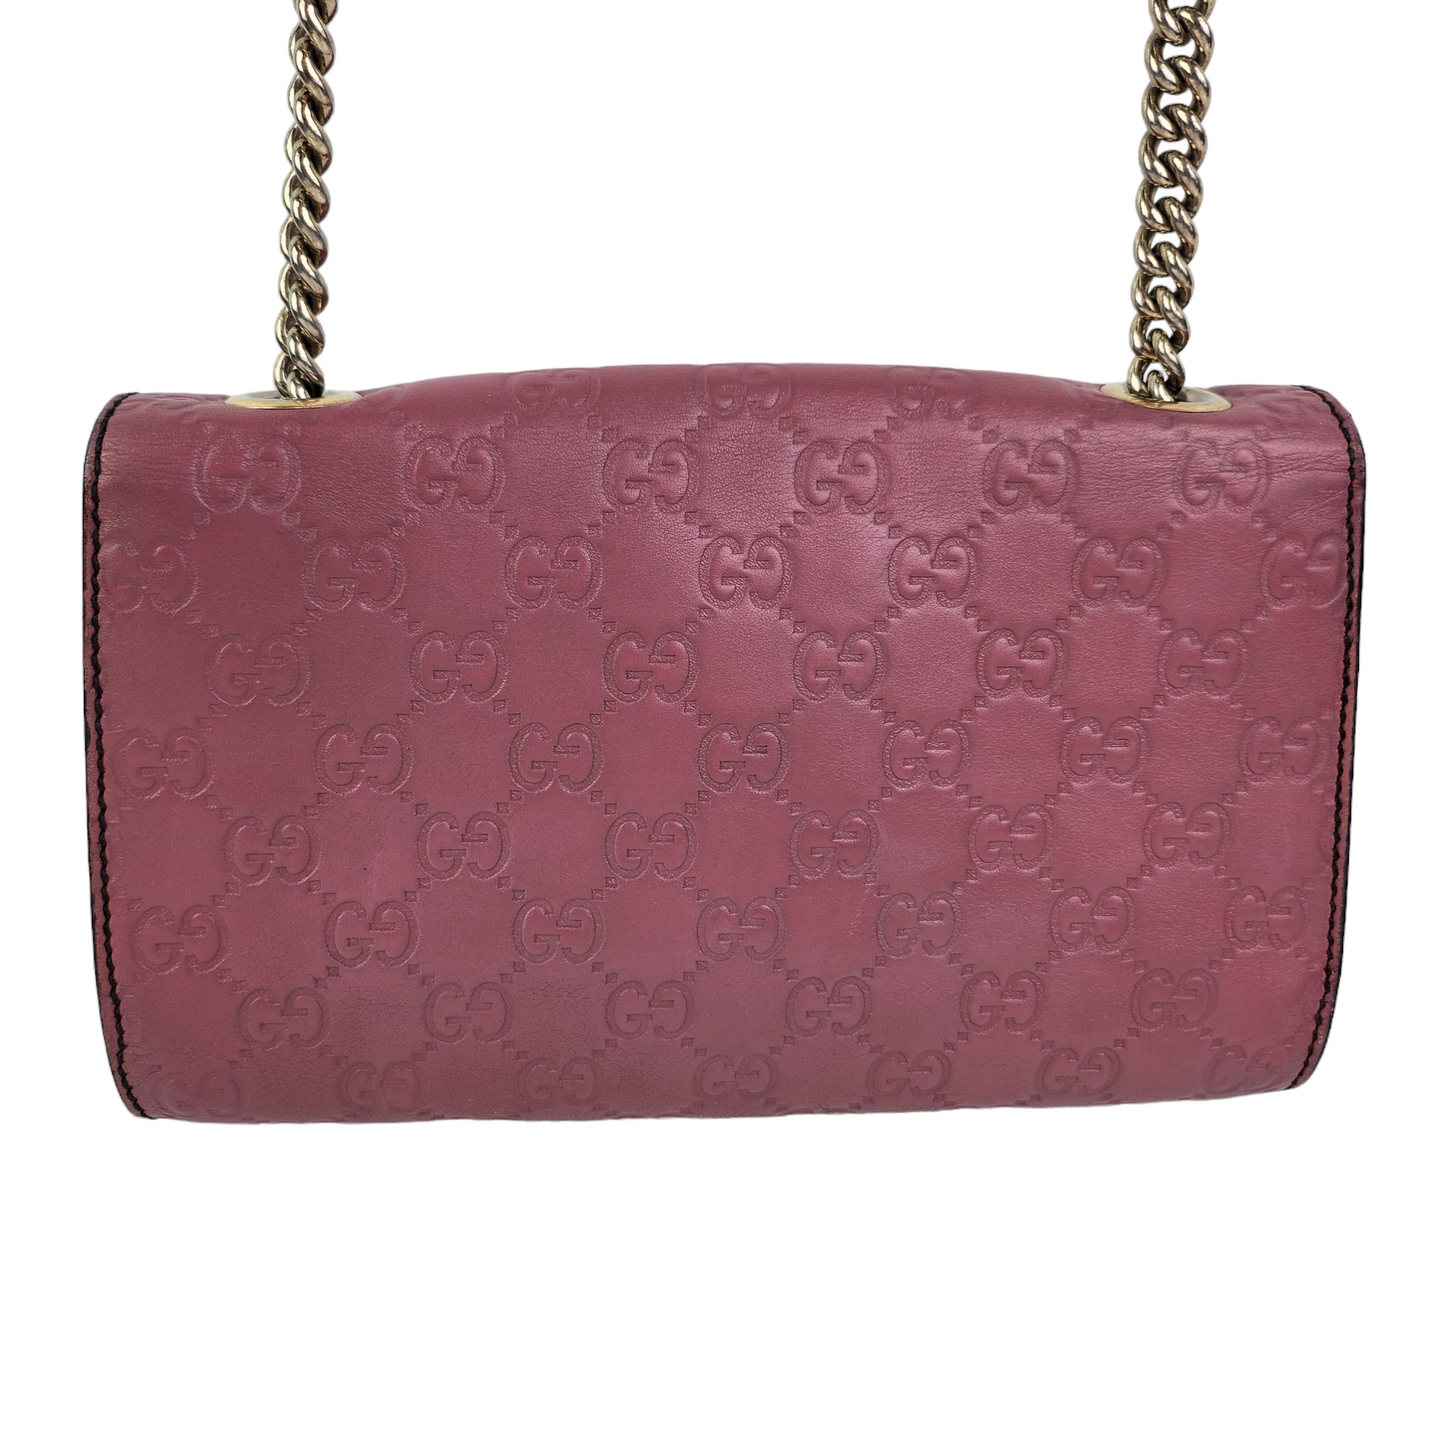 Gucci Guccissima Emily Chain Shoulder Bag